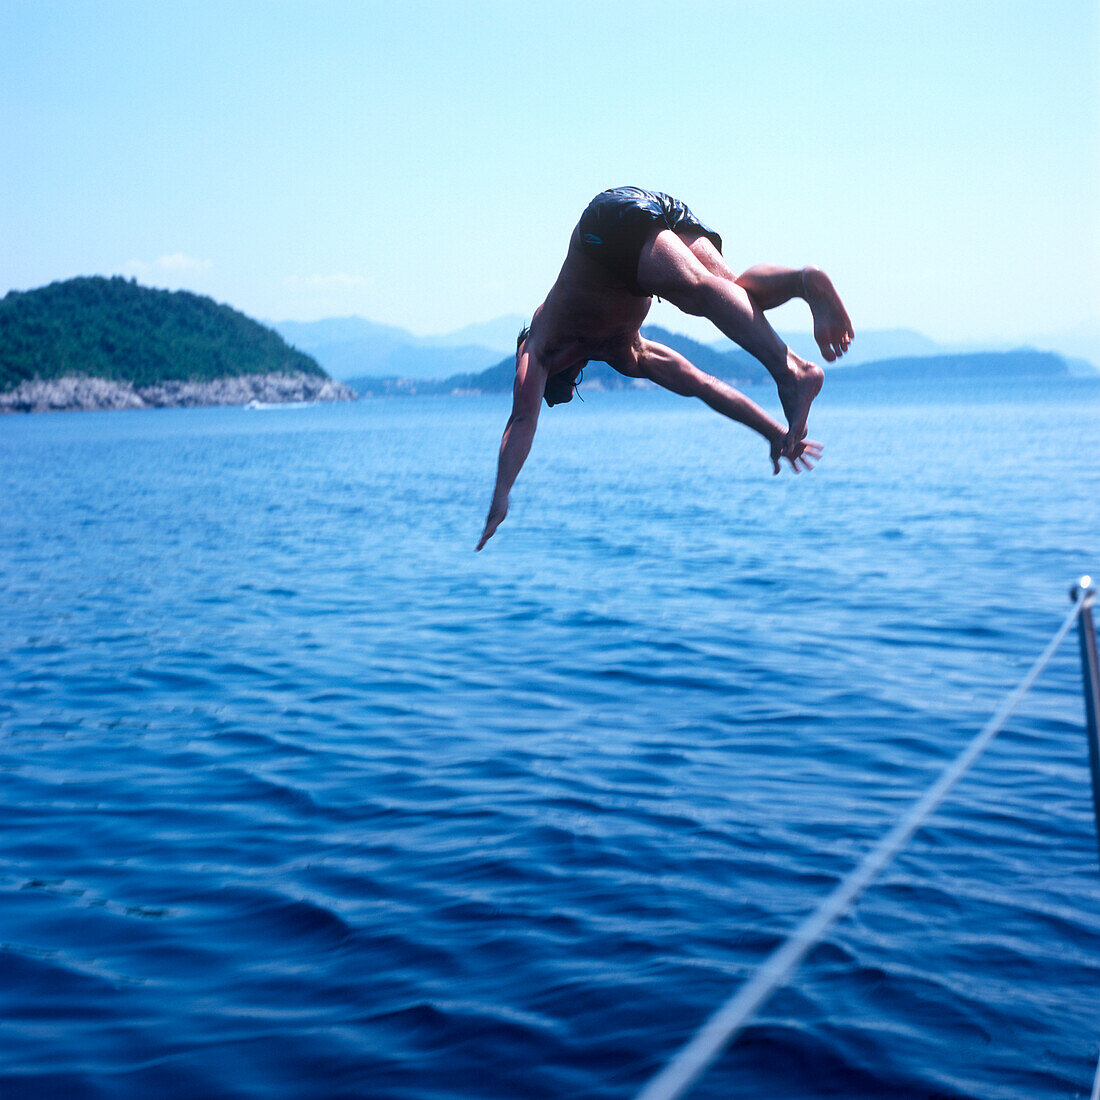 Mann macht Kopfsprung ins Wasser, Adria, Dalmatien, Kroatien